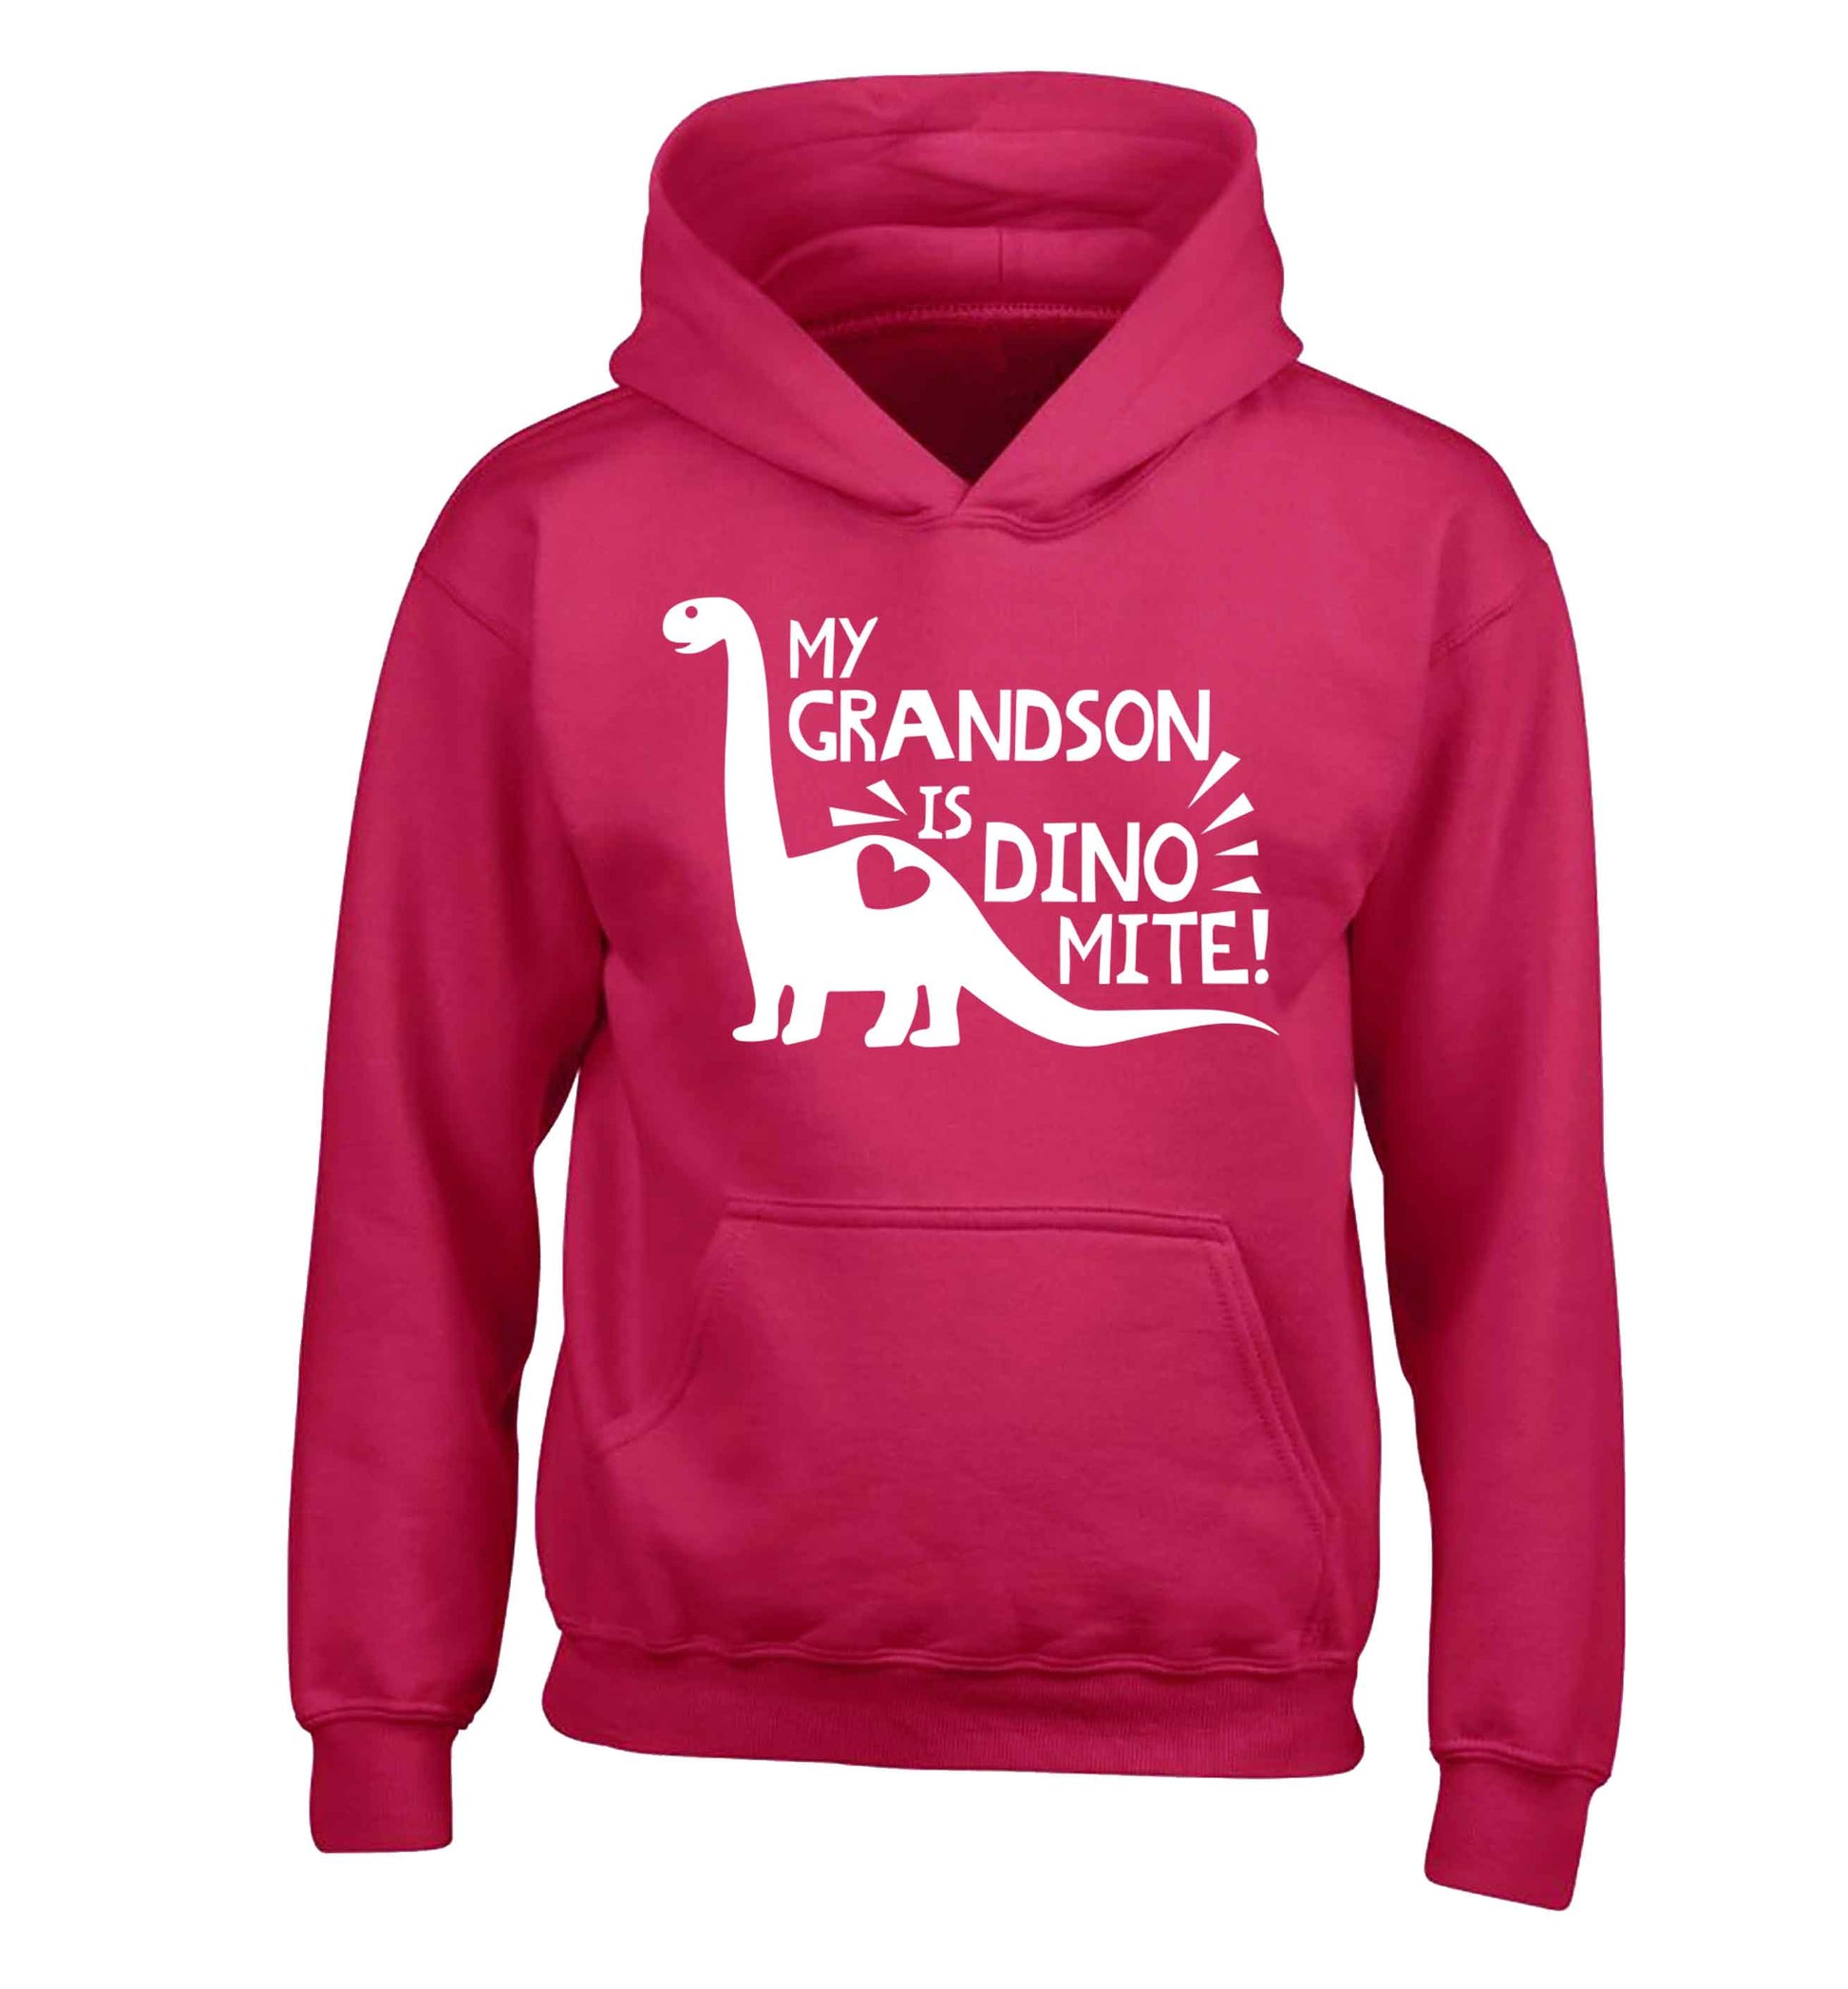 My grandson is dinomite! children's pink hoodie 12-13 Years